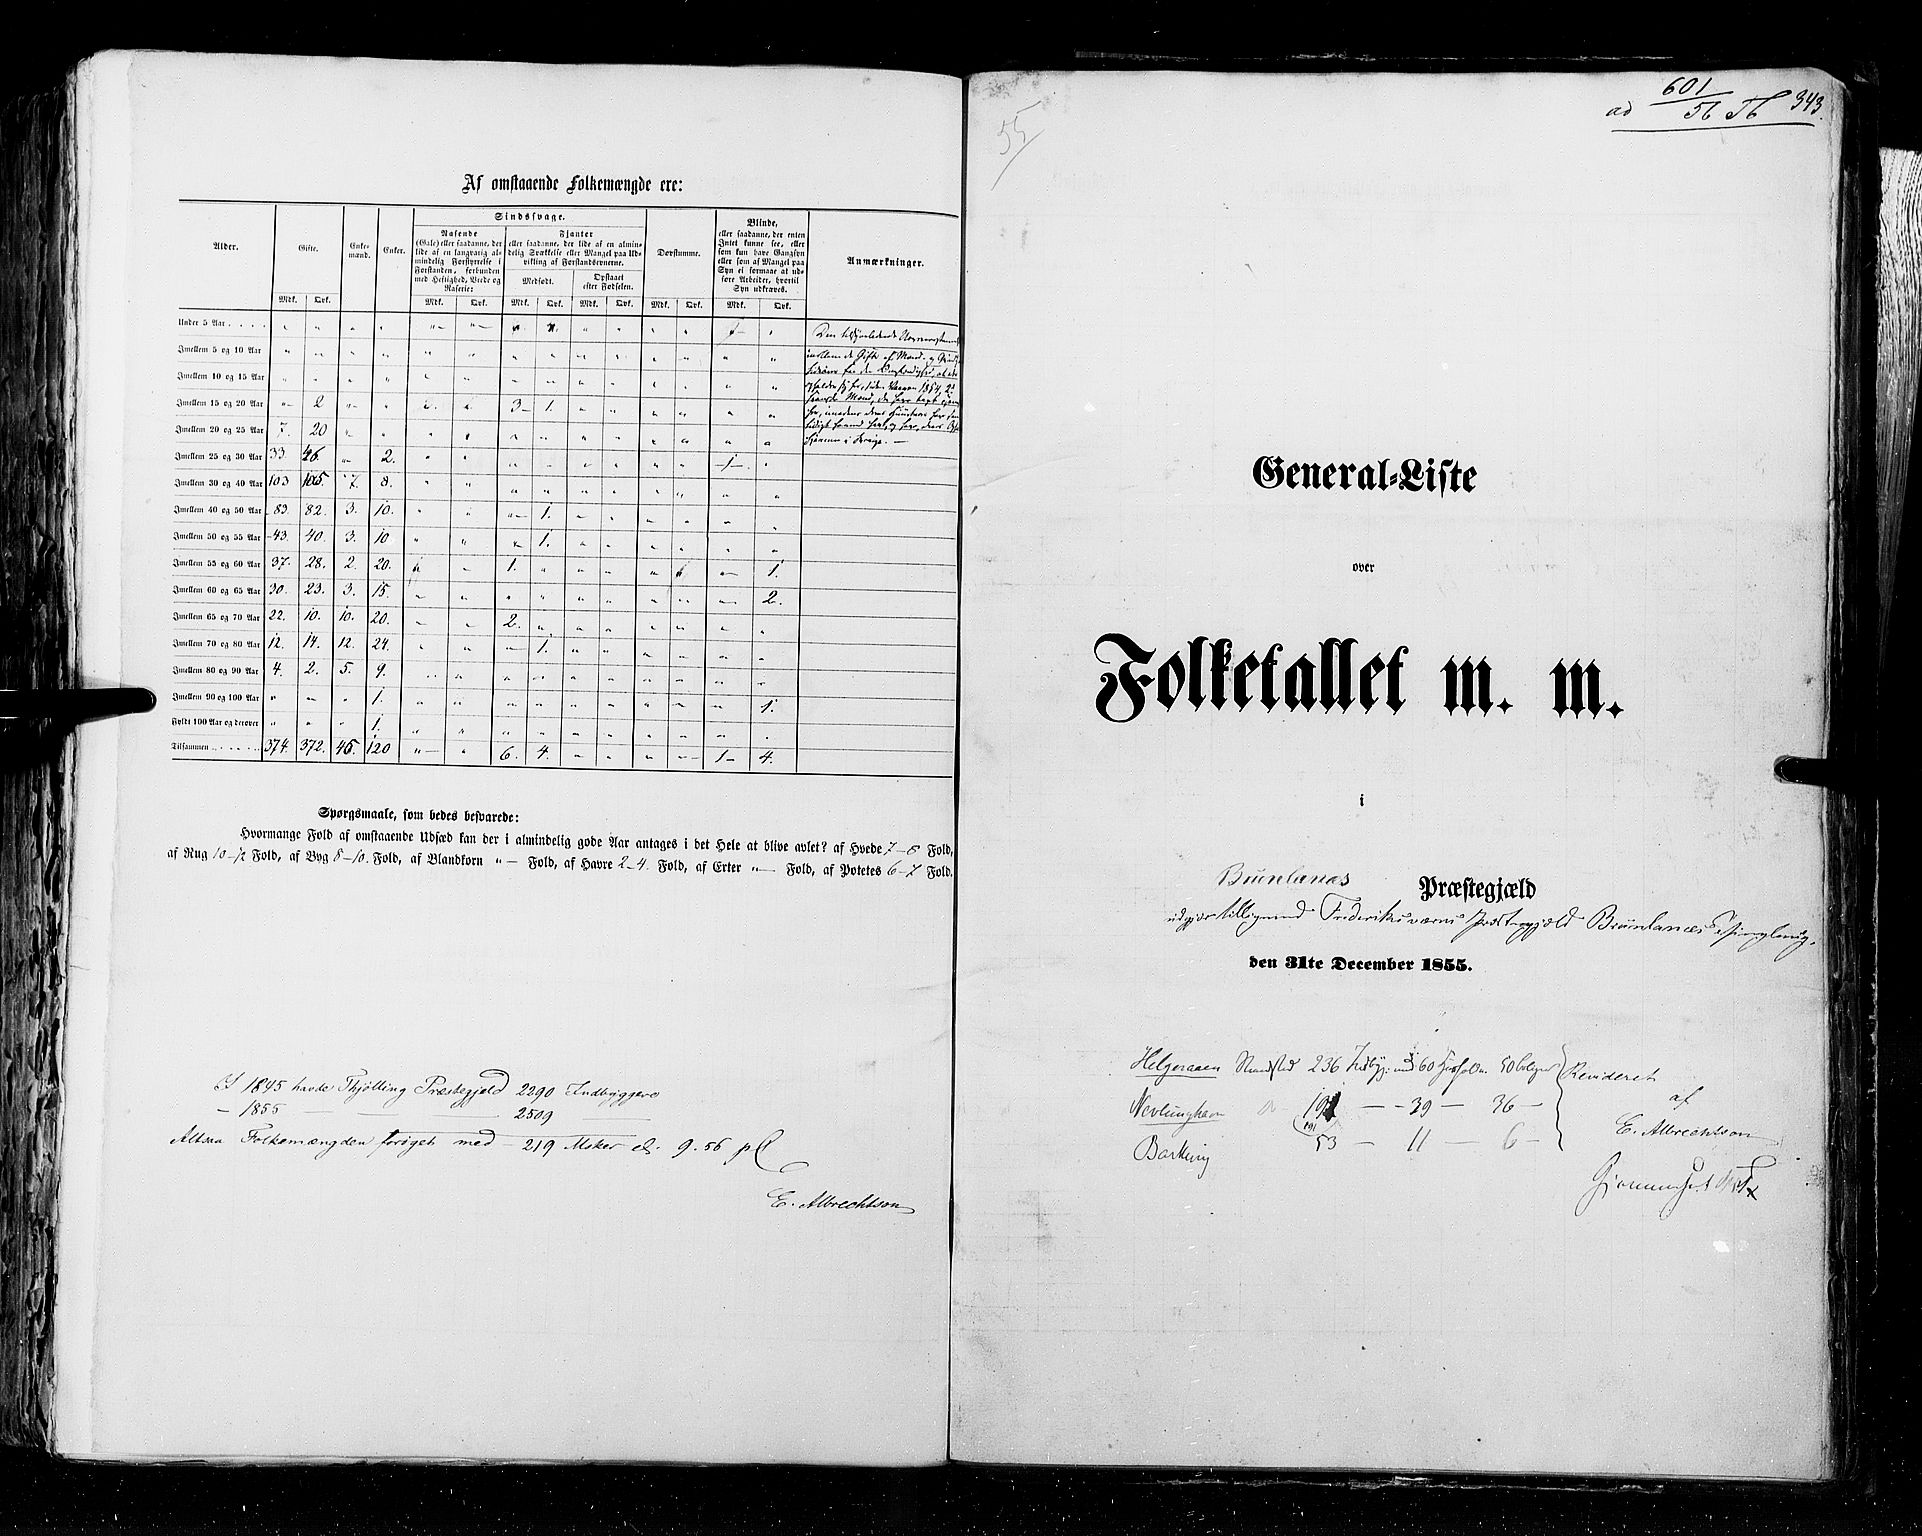 RA, Census 1855, vol. 2: Kristians amt, Buskerud amt og Jarlsberg og Larvik amt, 1855, p. 343